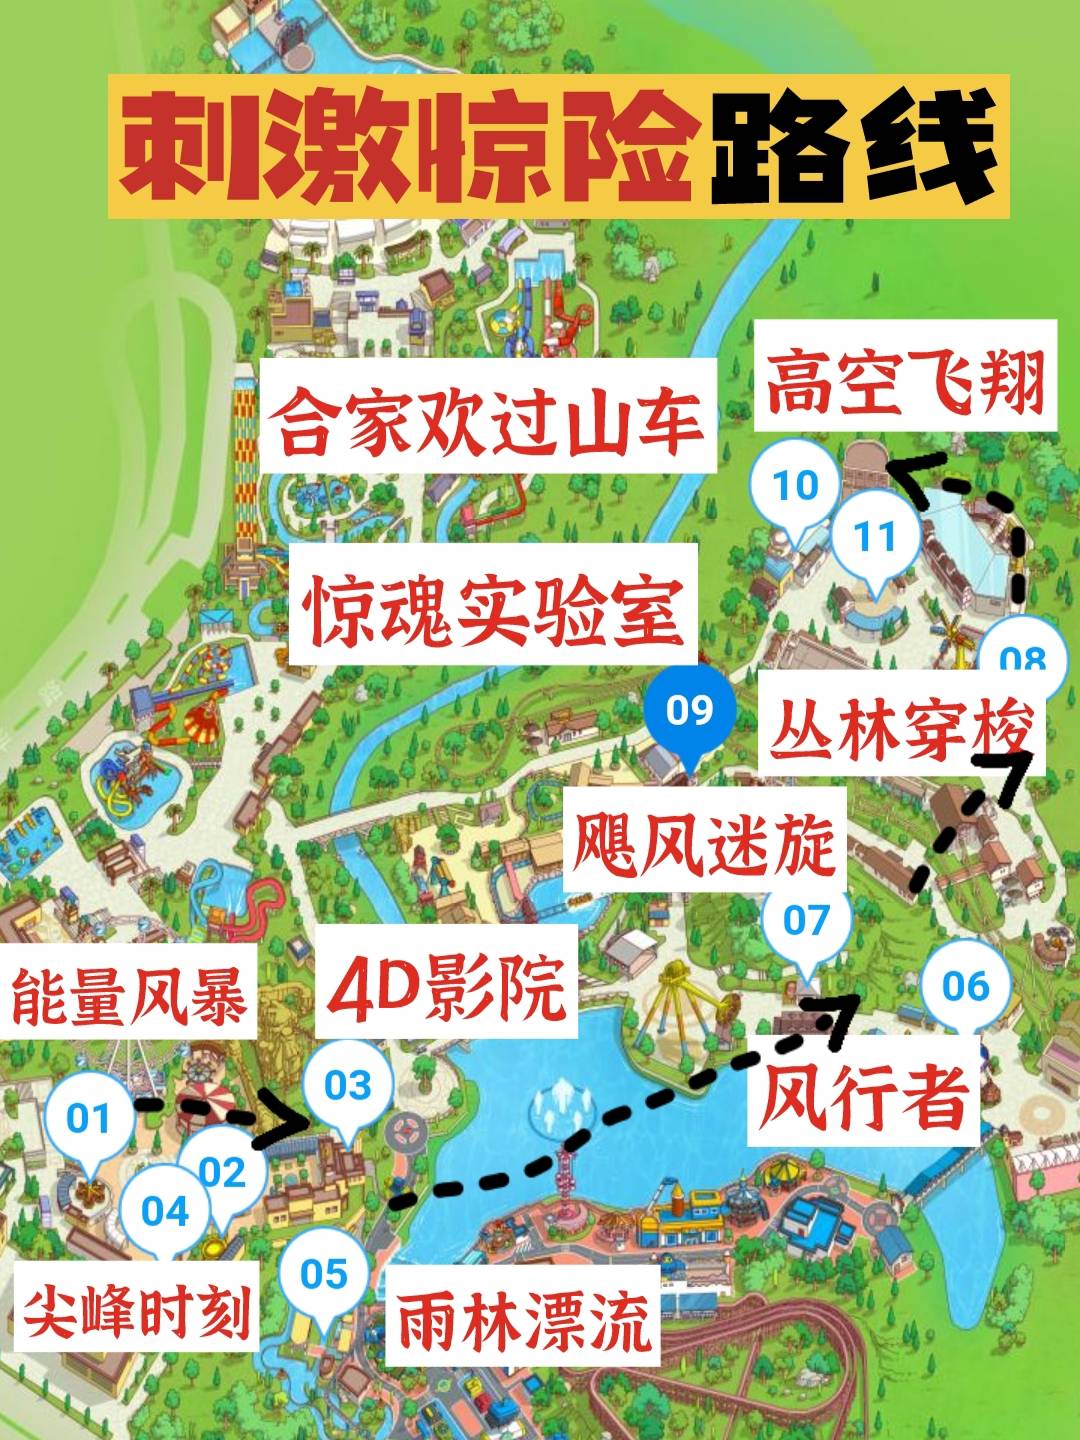 重庆欢乐谷地图导览图片